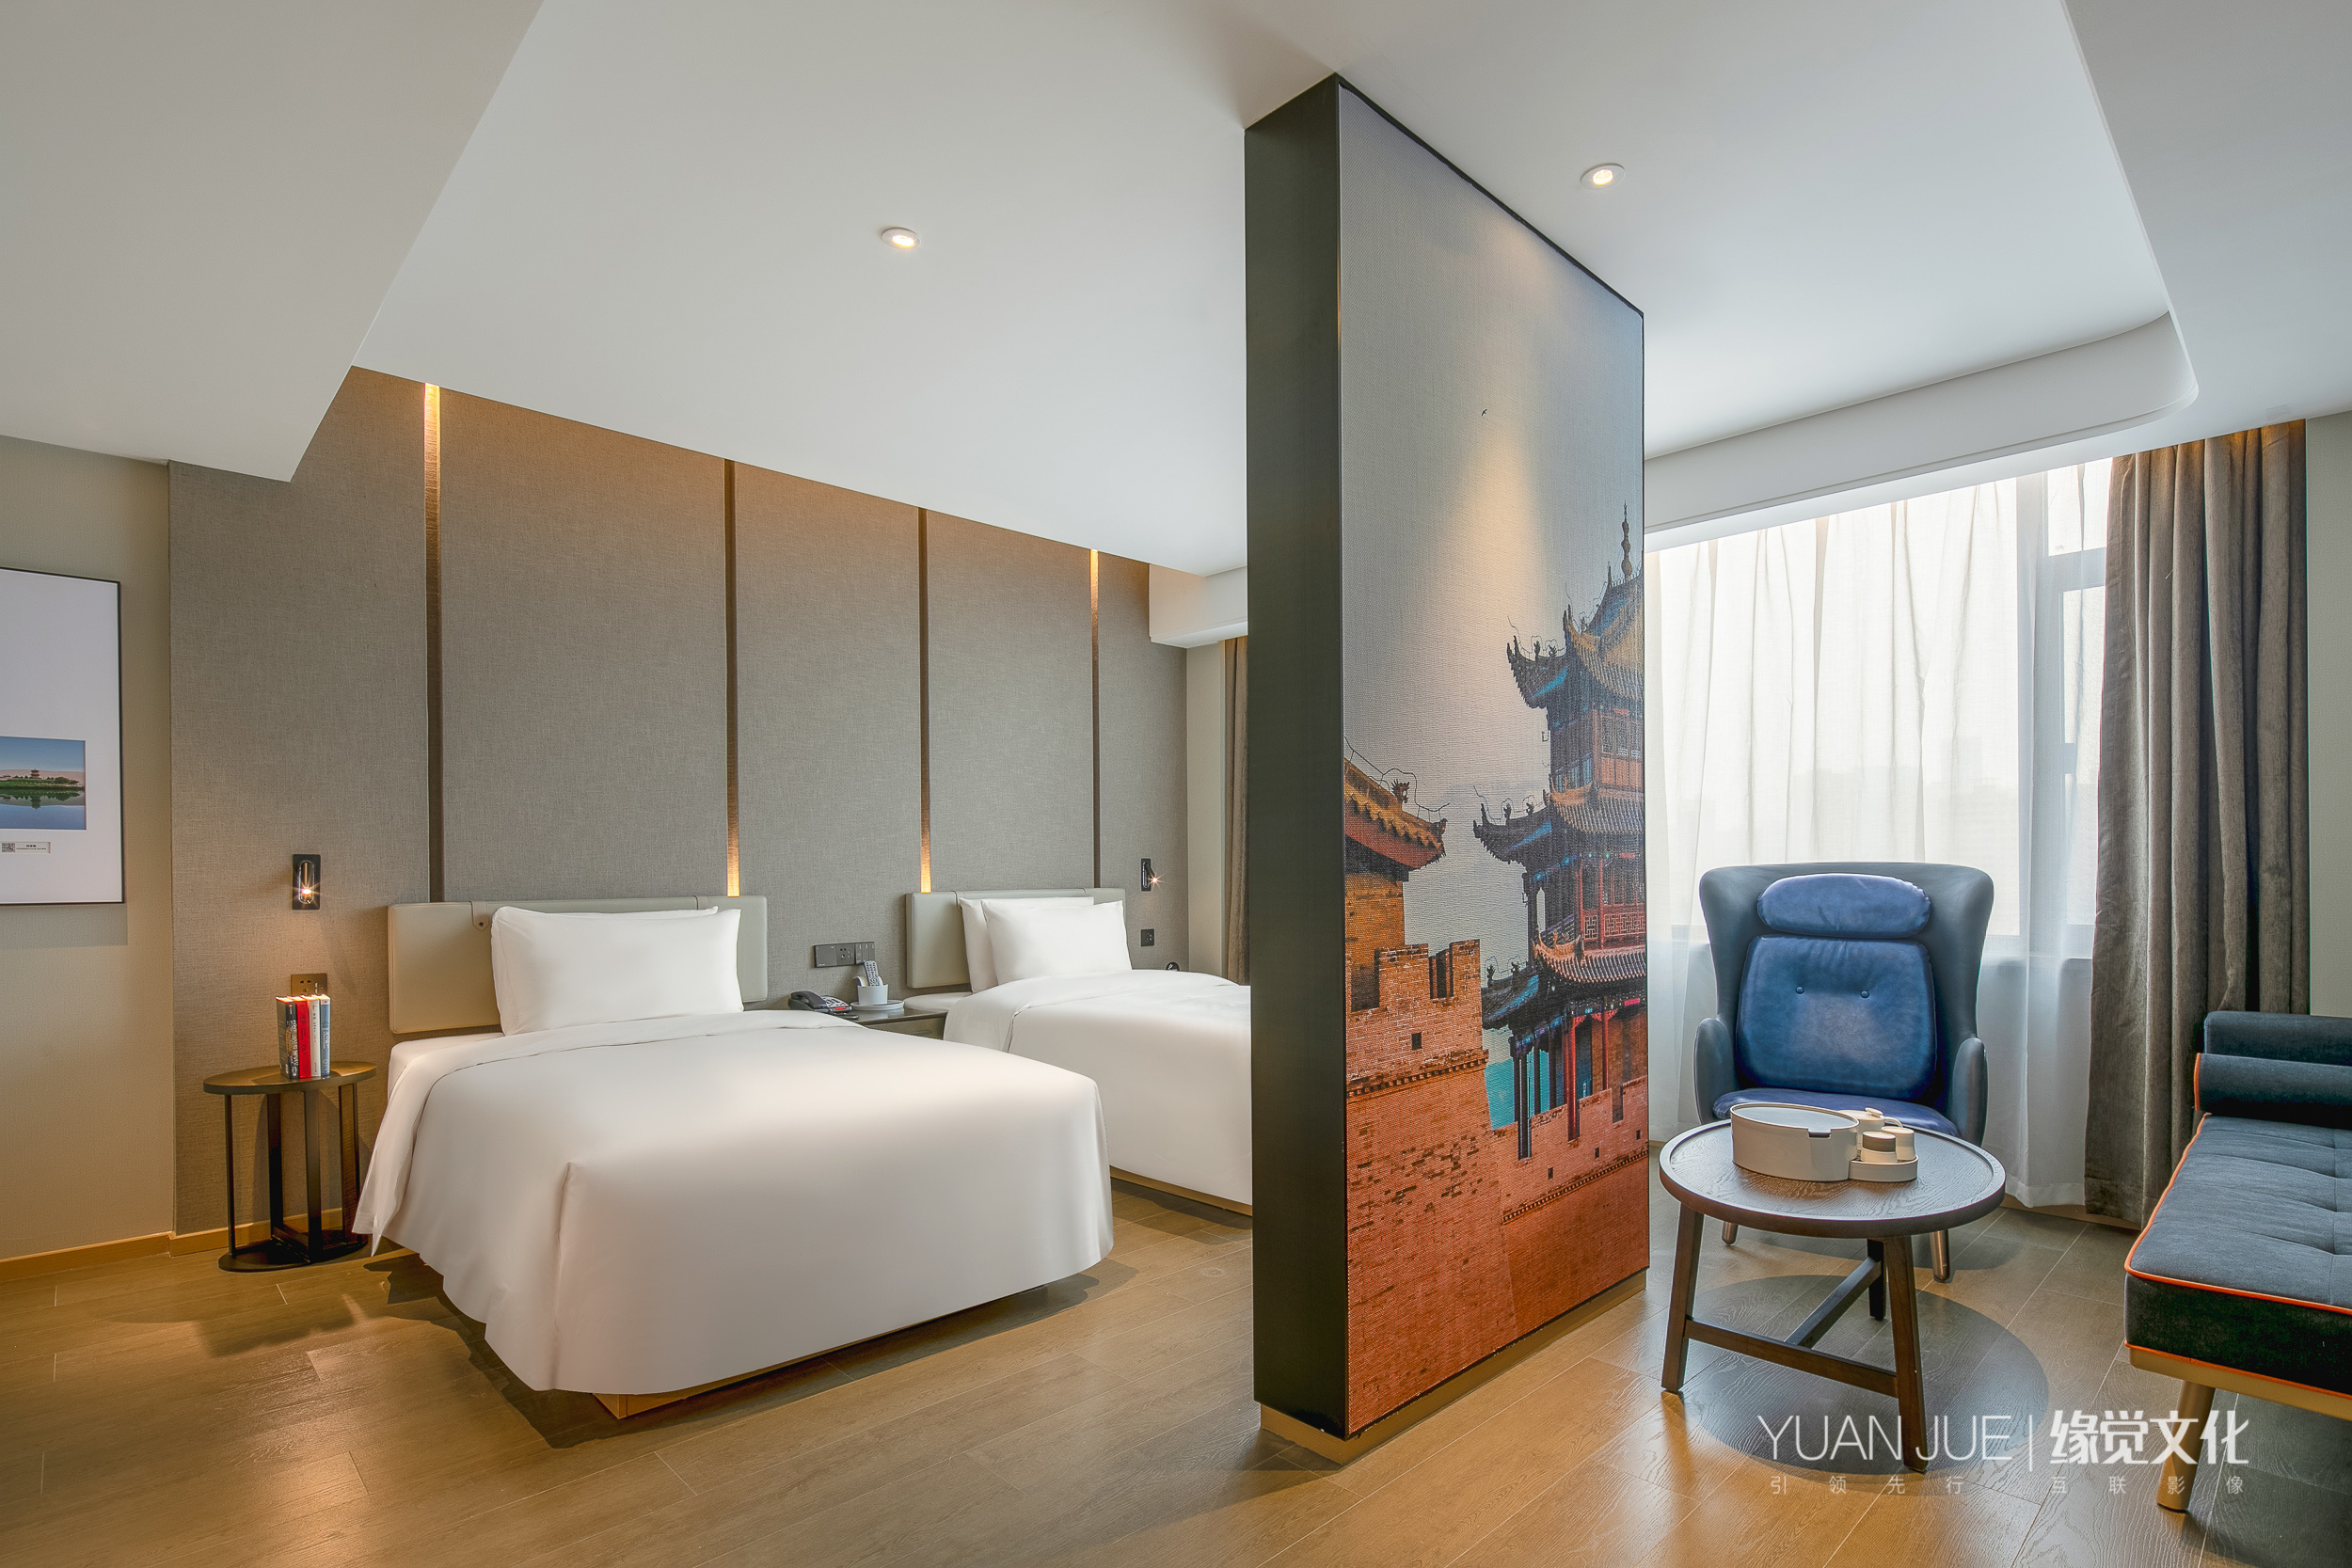 西安丽思卡尔顿酒店将于2019年6月优雅启幕_宾客